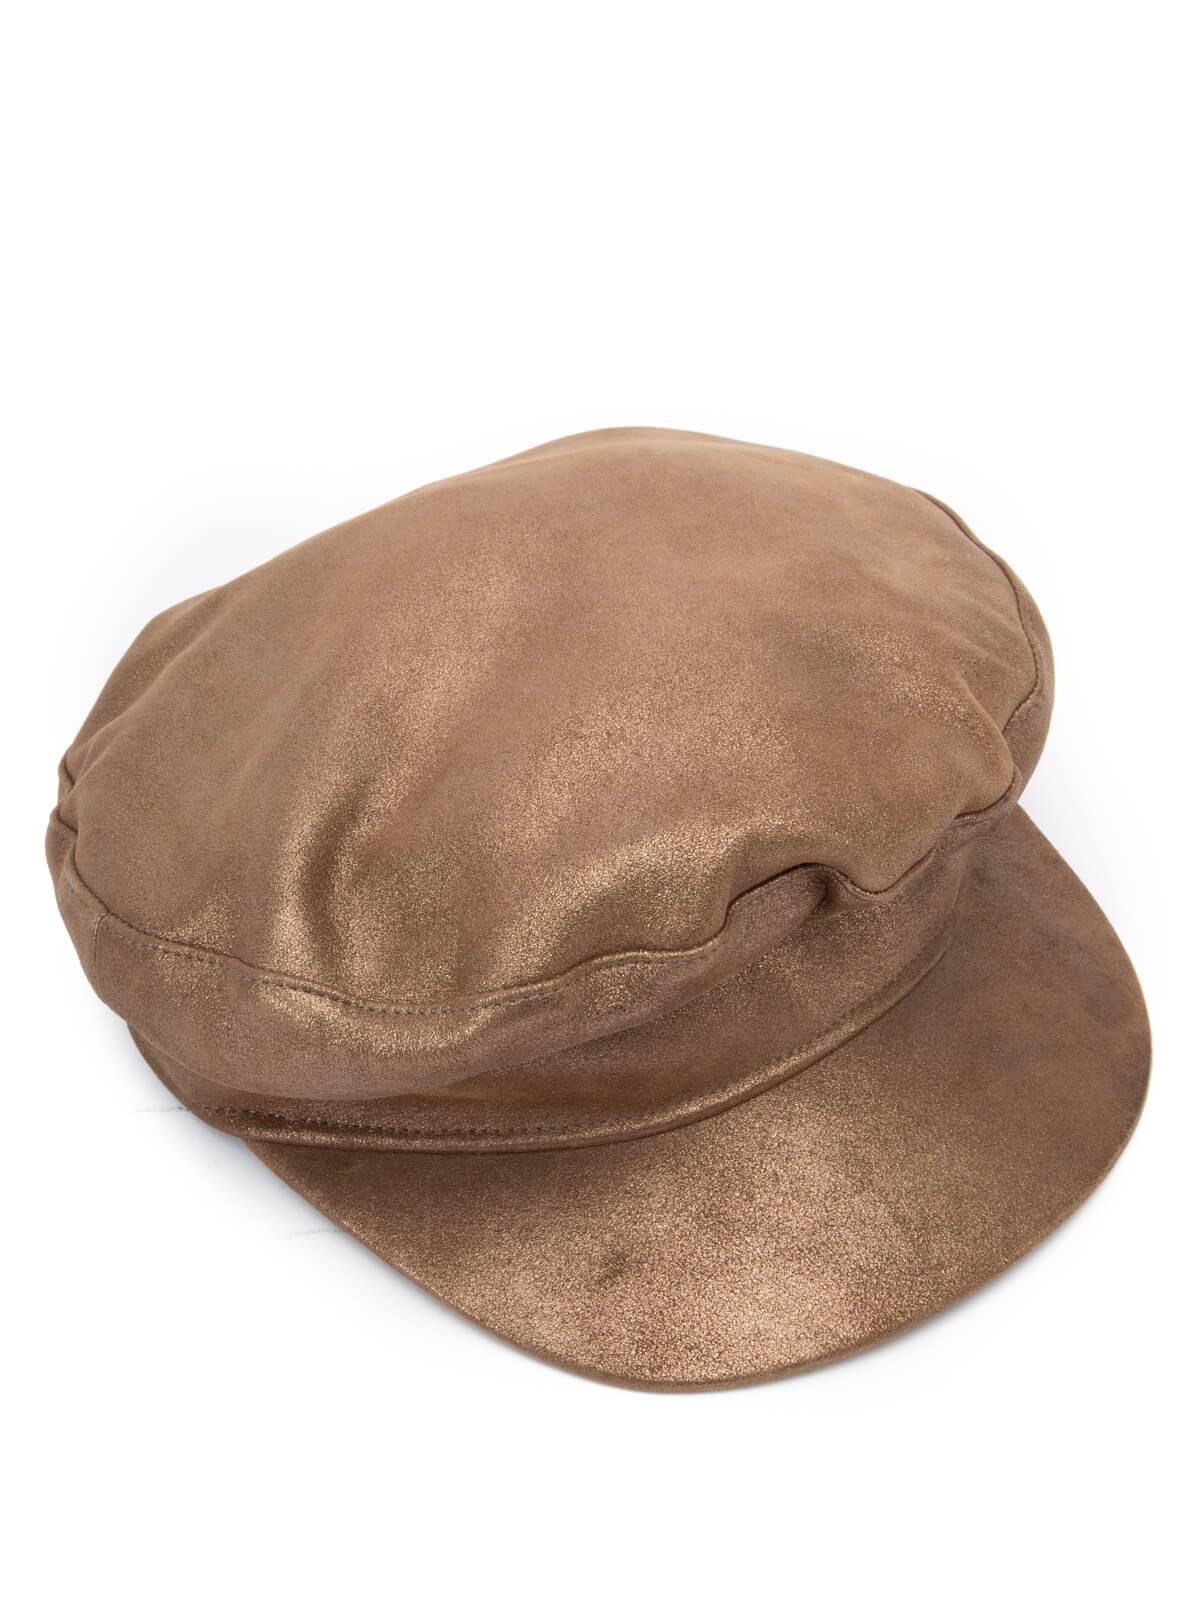 hermes beret hat